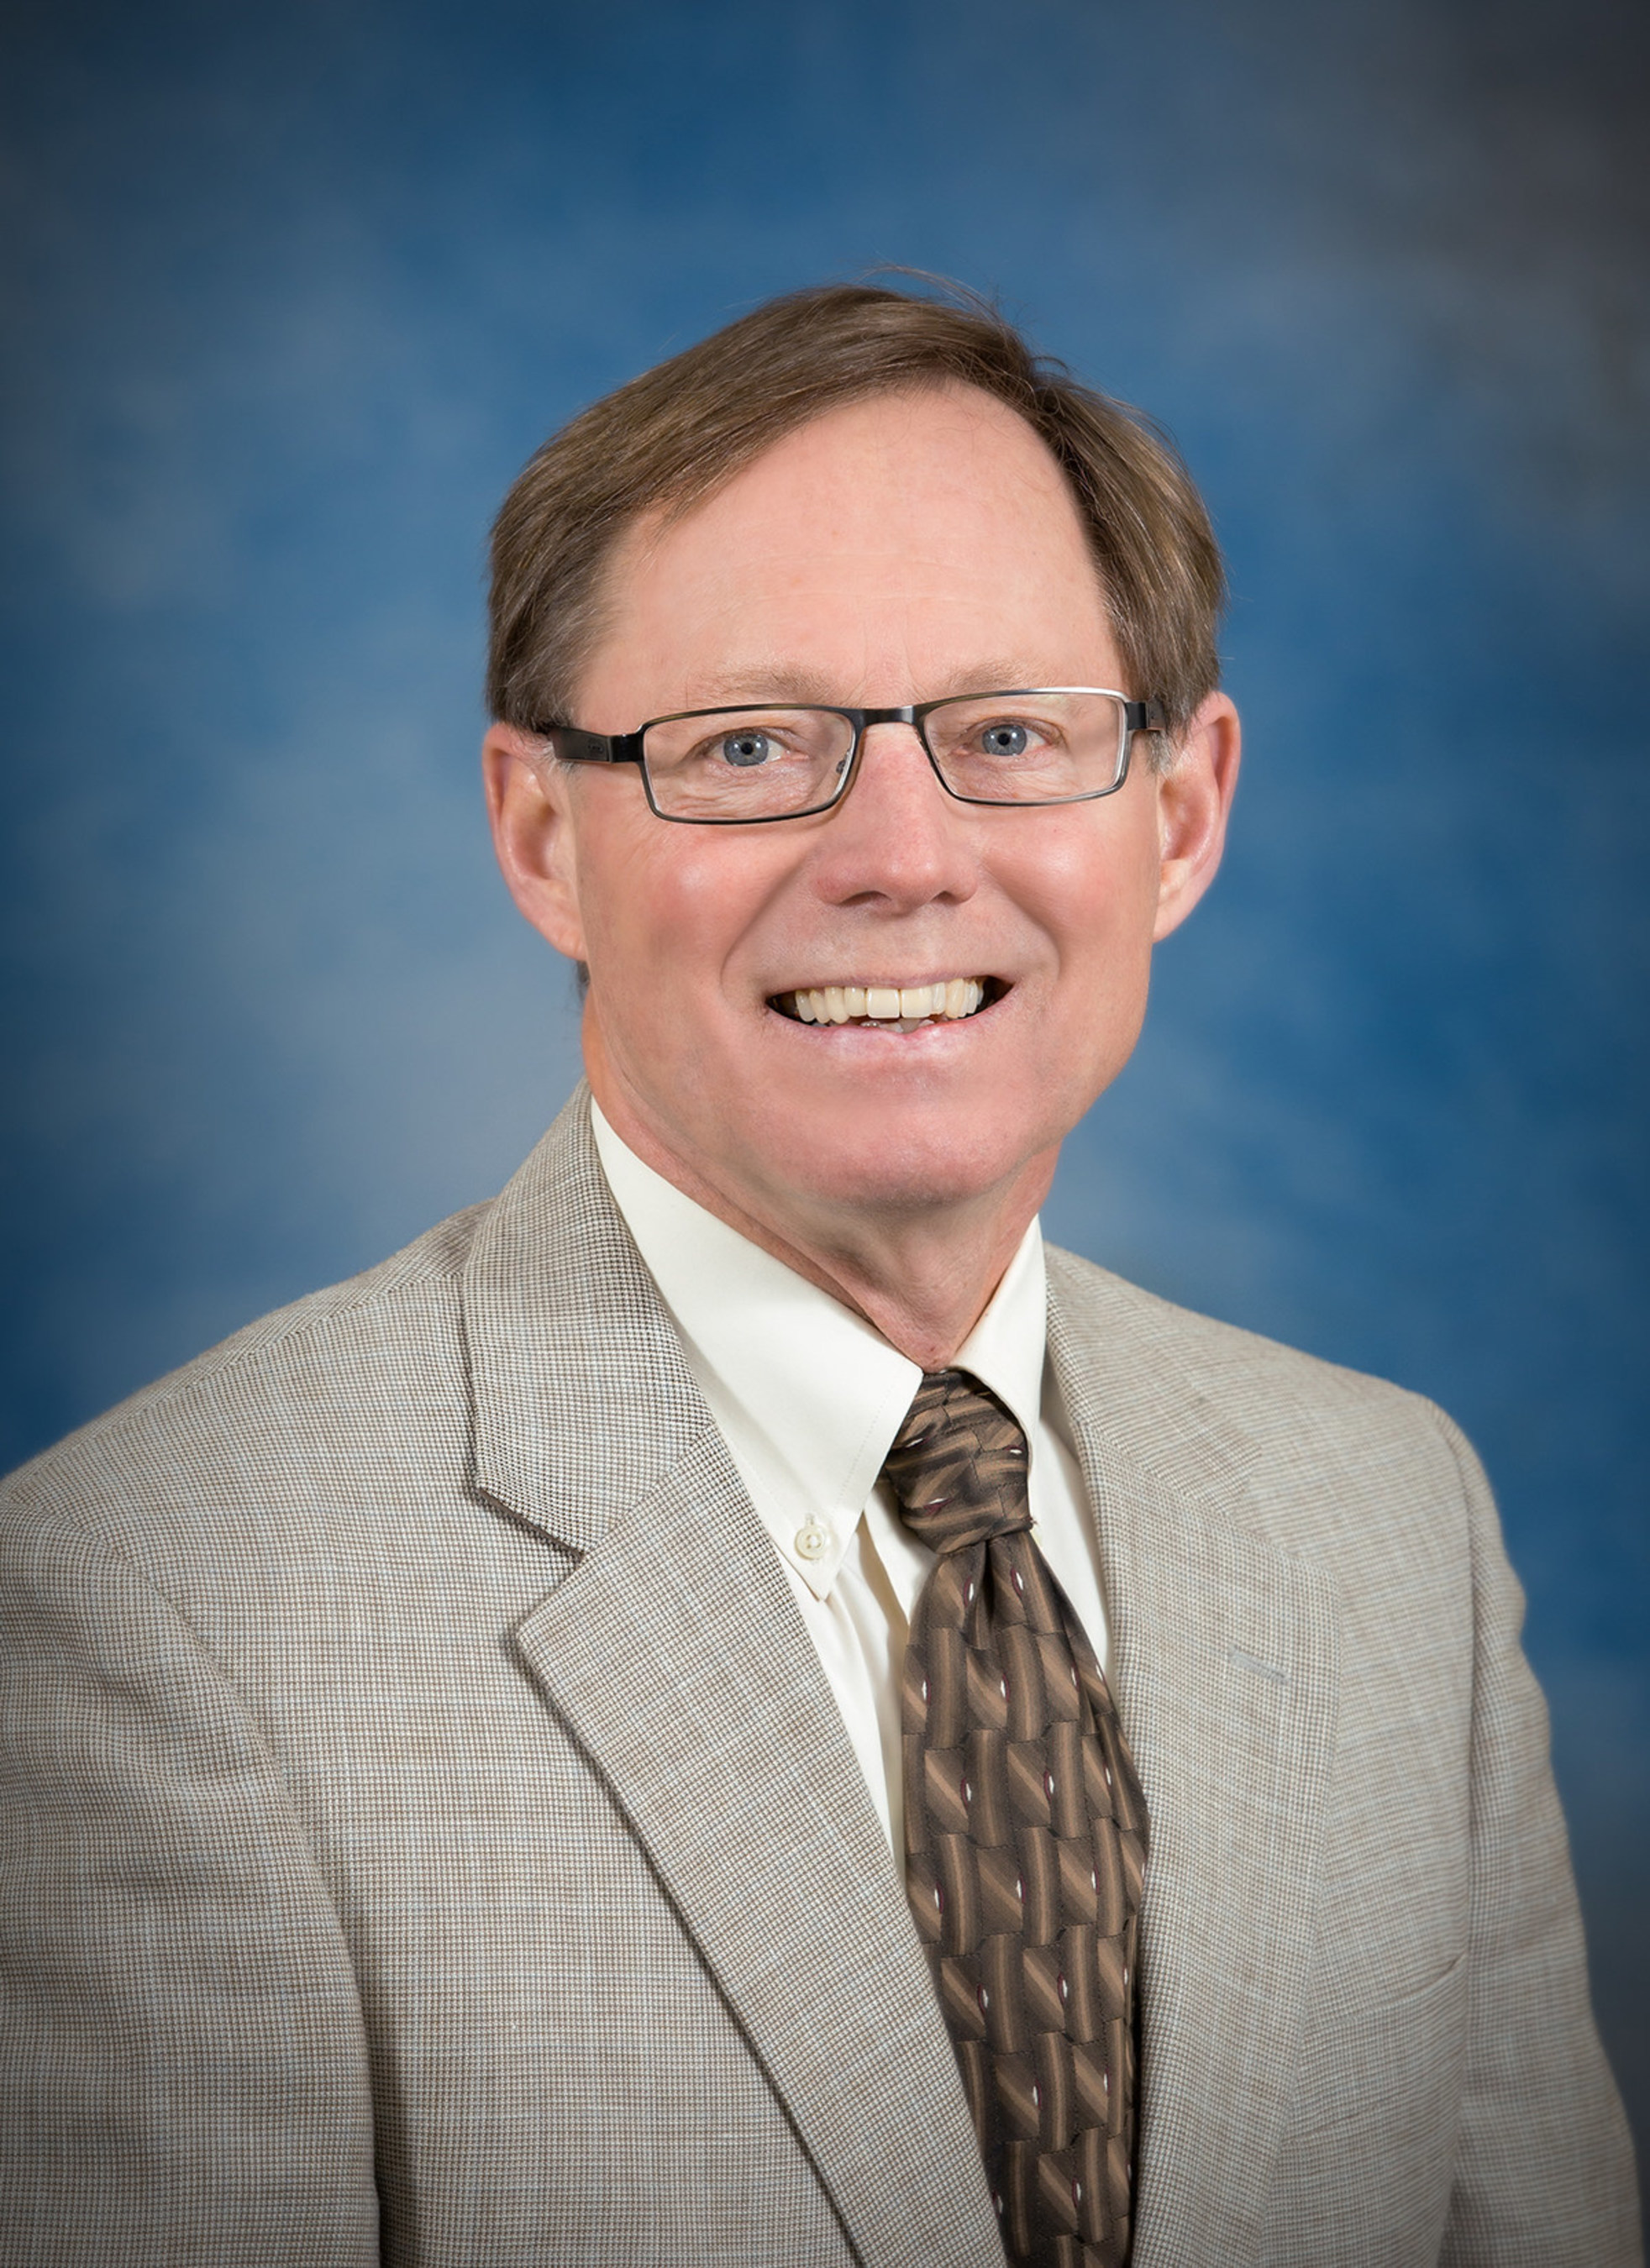 Glenn Smith, board chair of MidMichigan Health